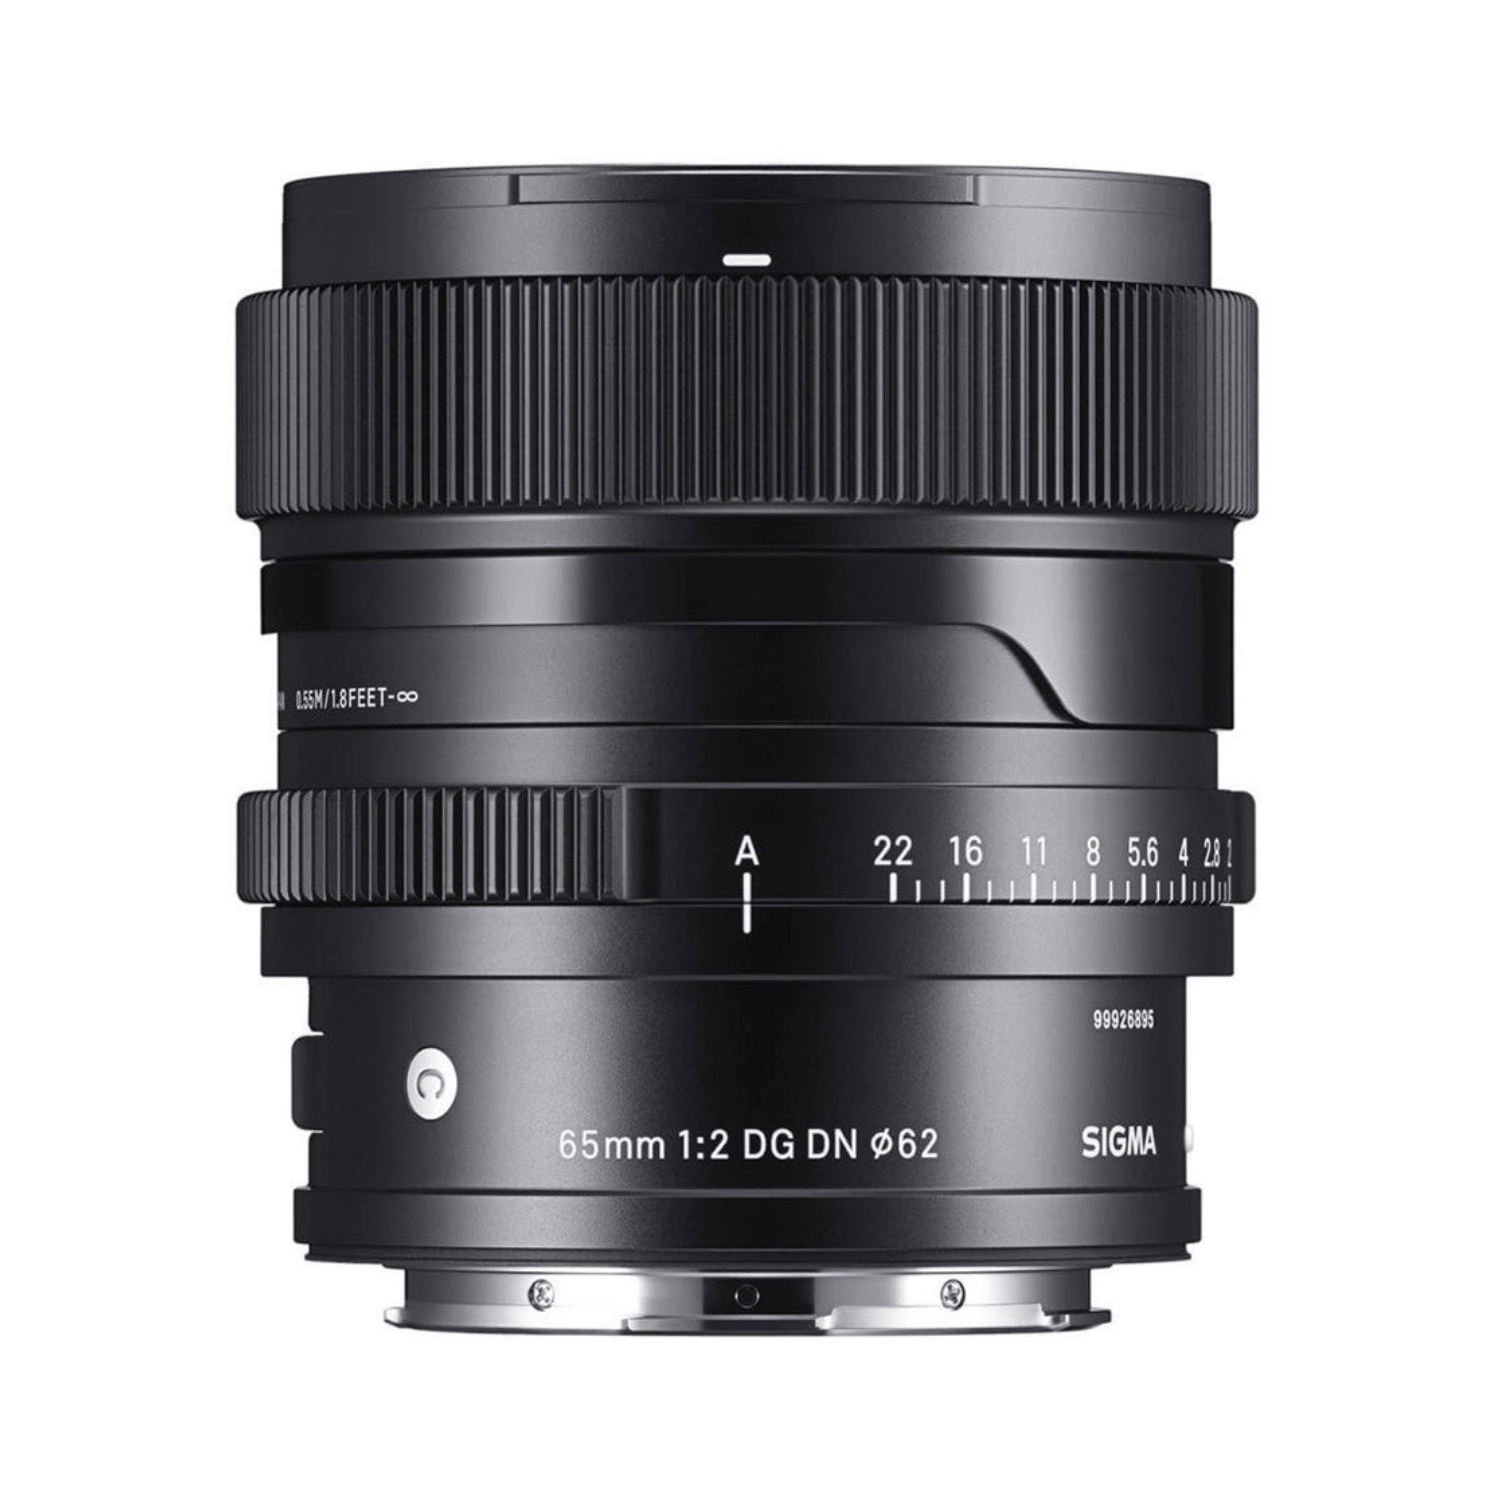 Sigma 65mm F2 DG DN per Leica L-mount - Garanzia M-trading 3 anni- Cine Sud è sul mercato da 48 anni! 6030129